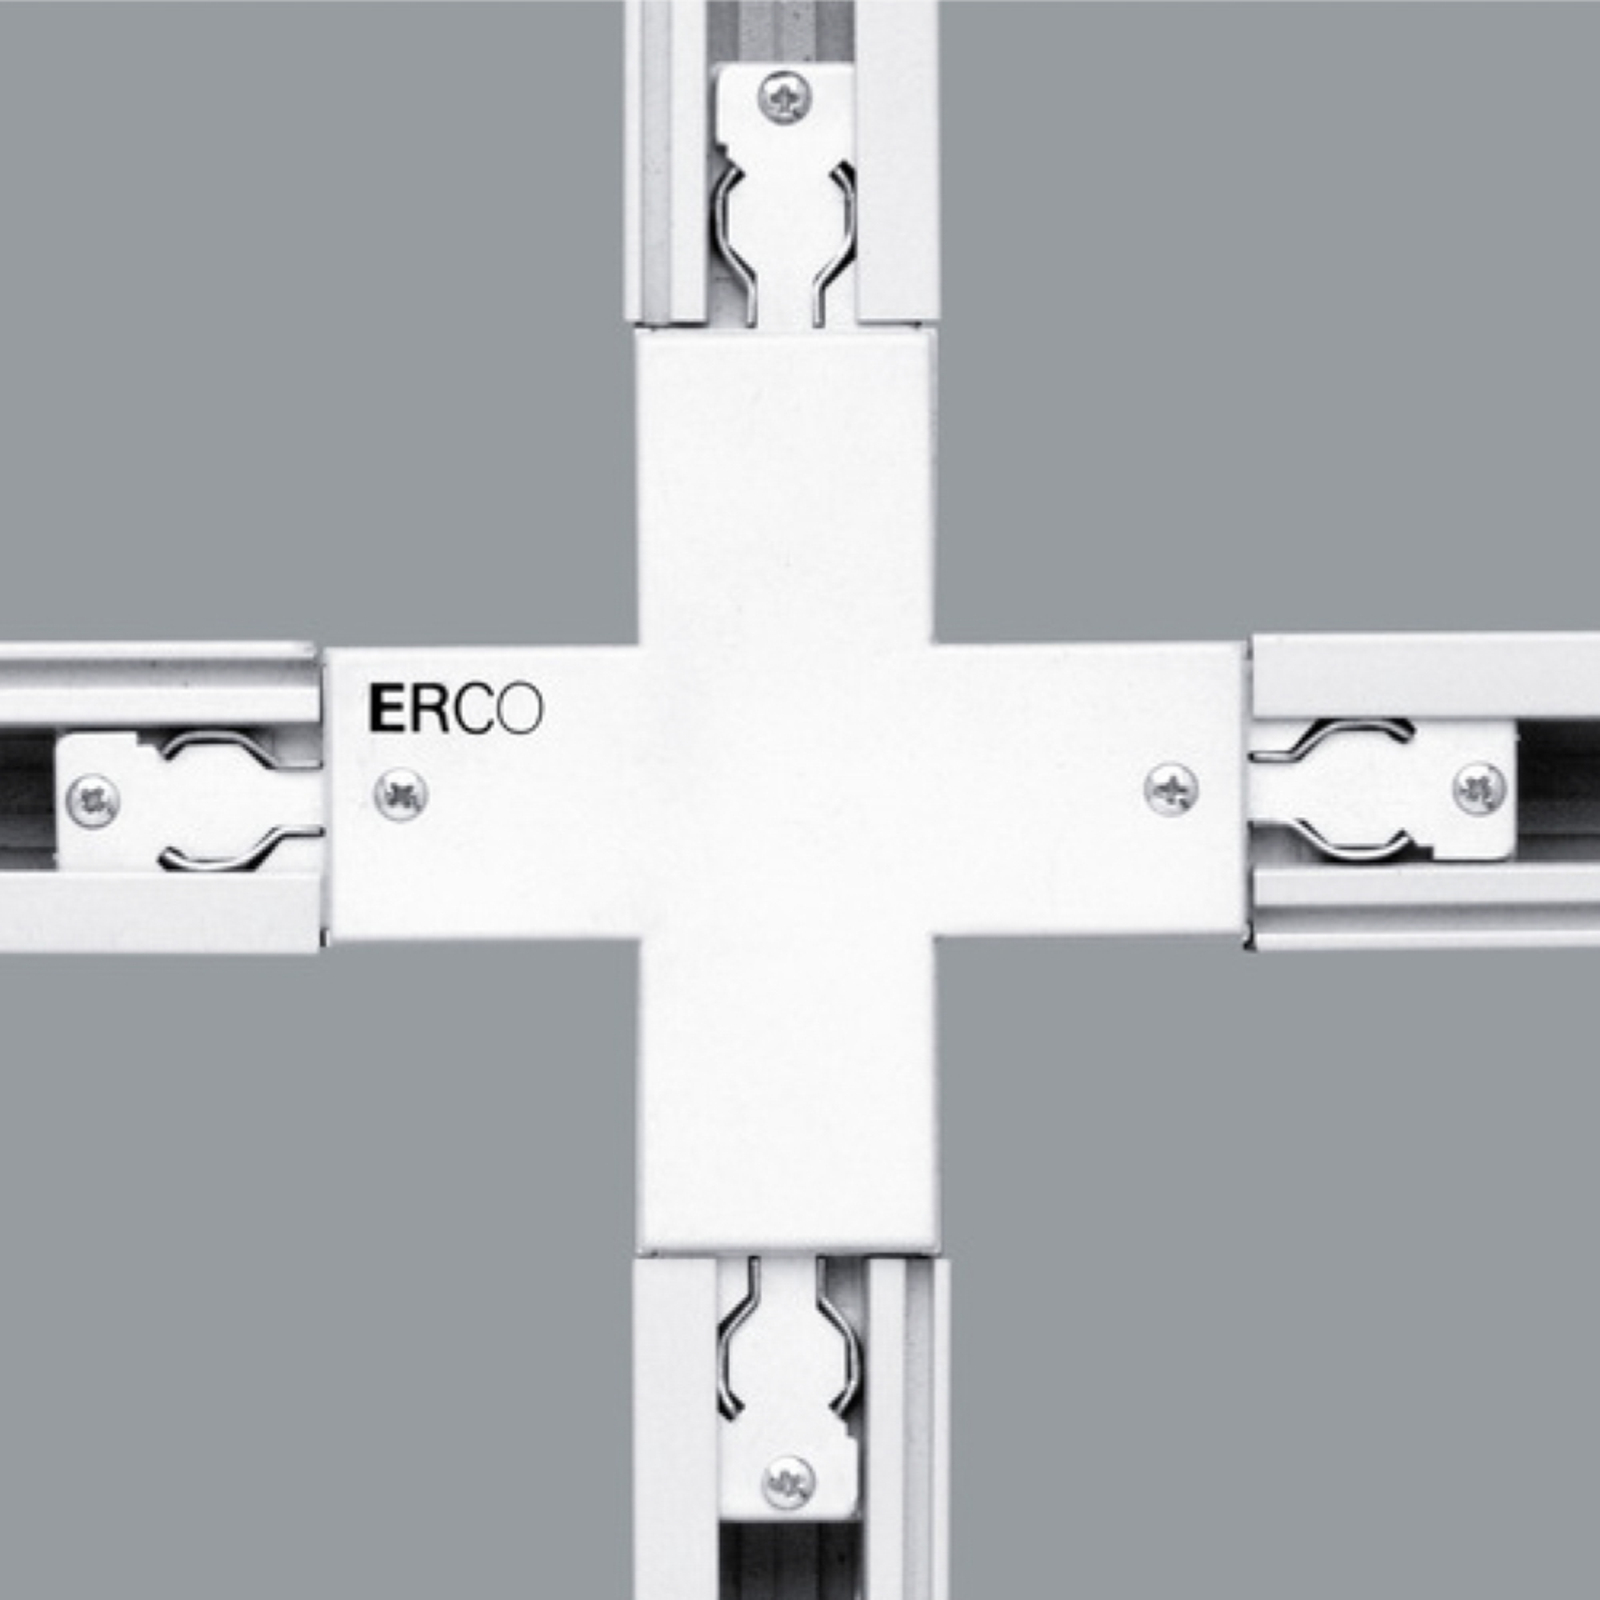 ERCO korsanslutning för 3-fas skena, vit